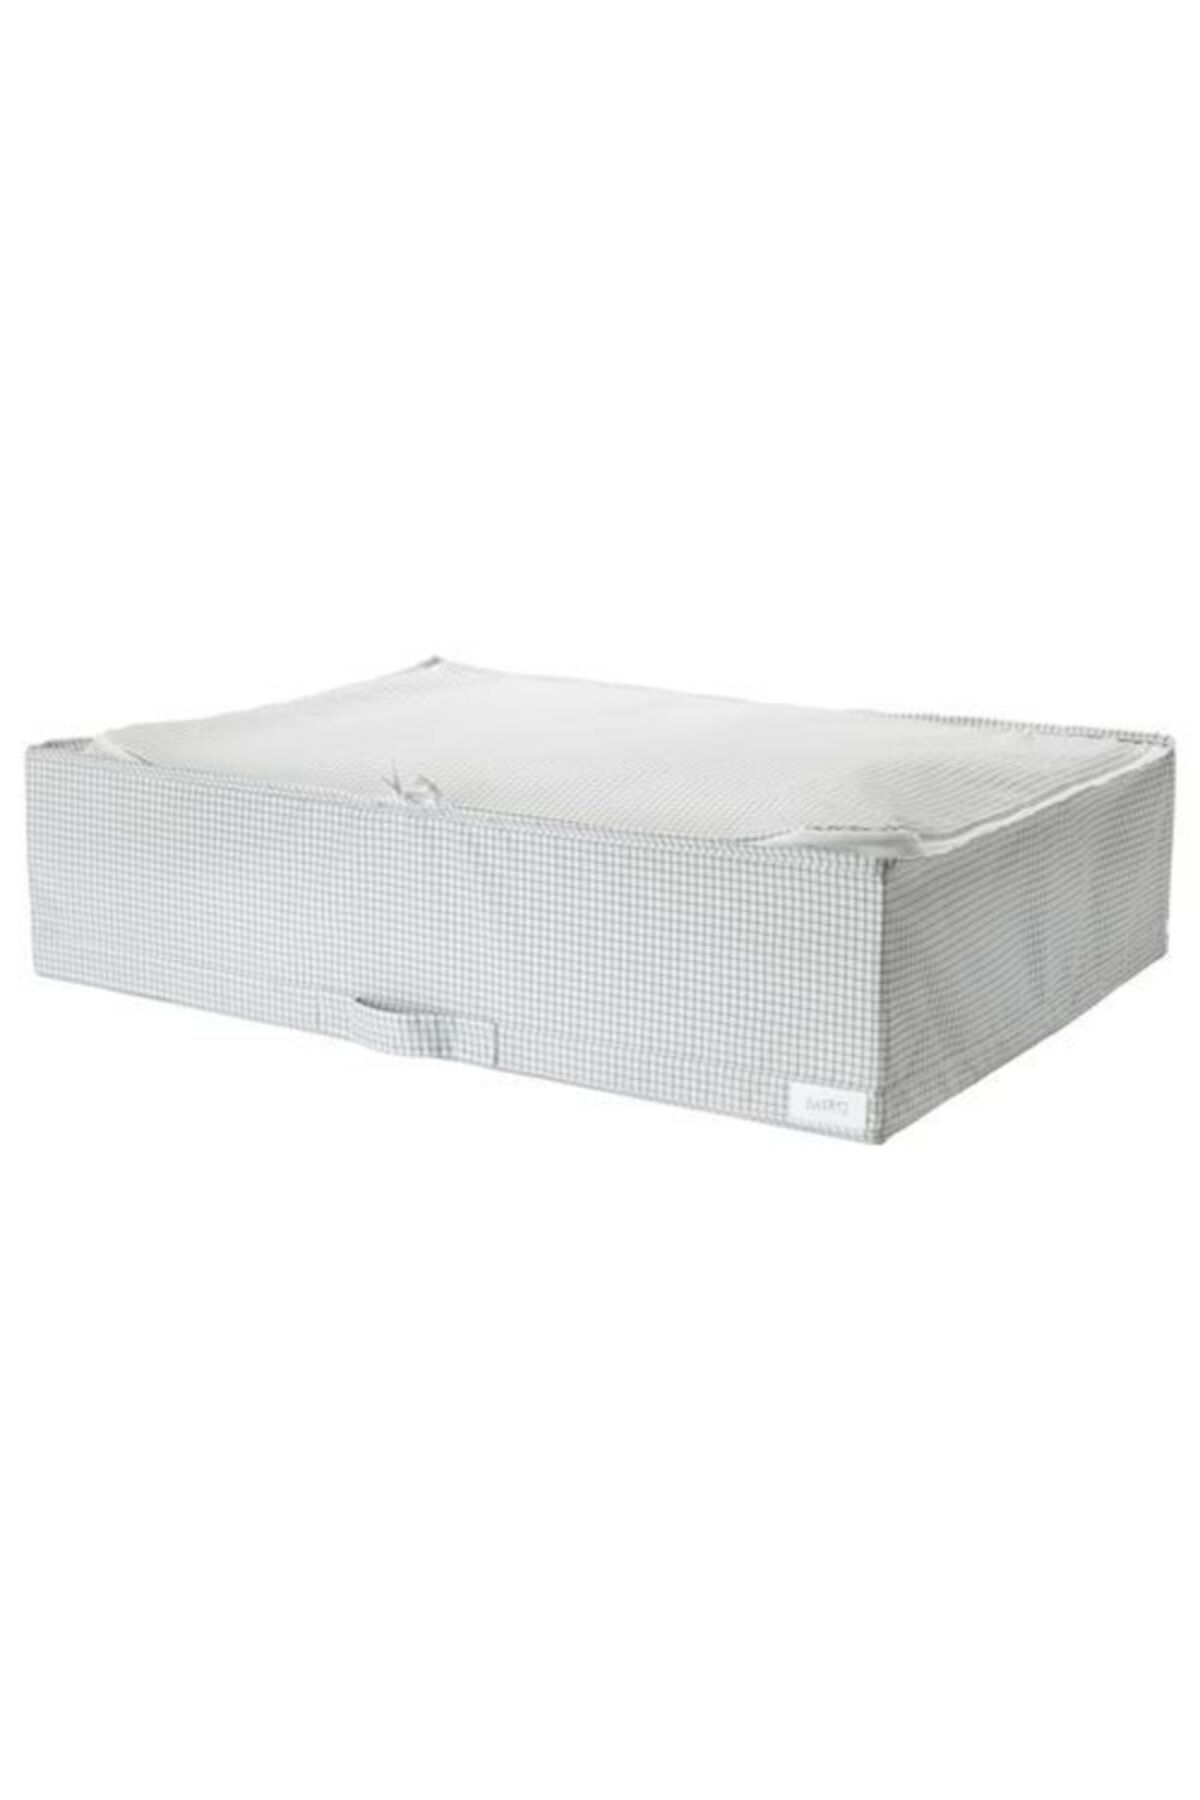 IKEA Stuk Dolap İçi Düzenleyici Kutu Beyaz  71x51x18 cm